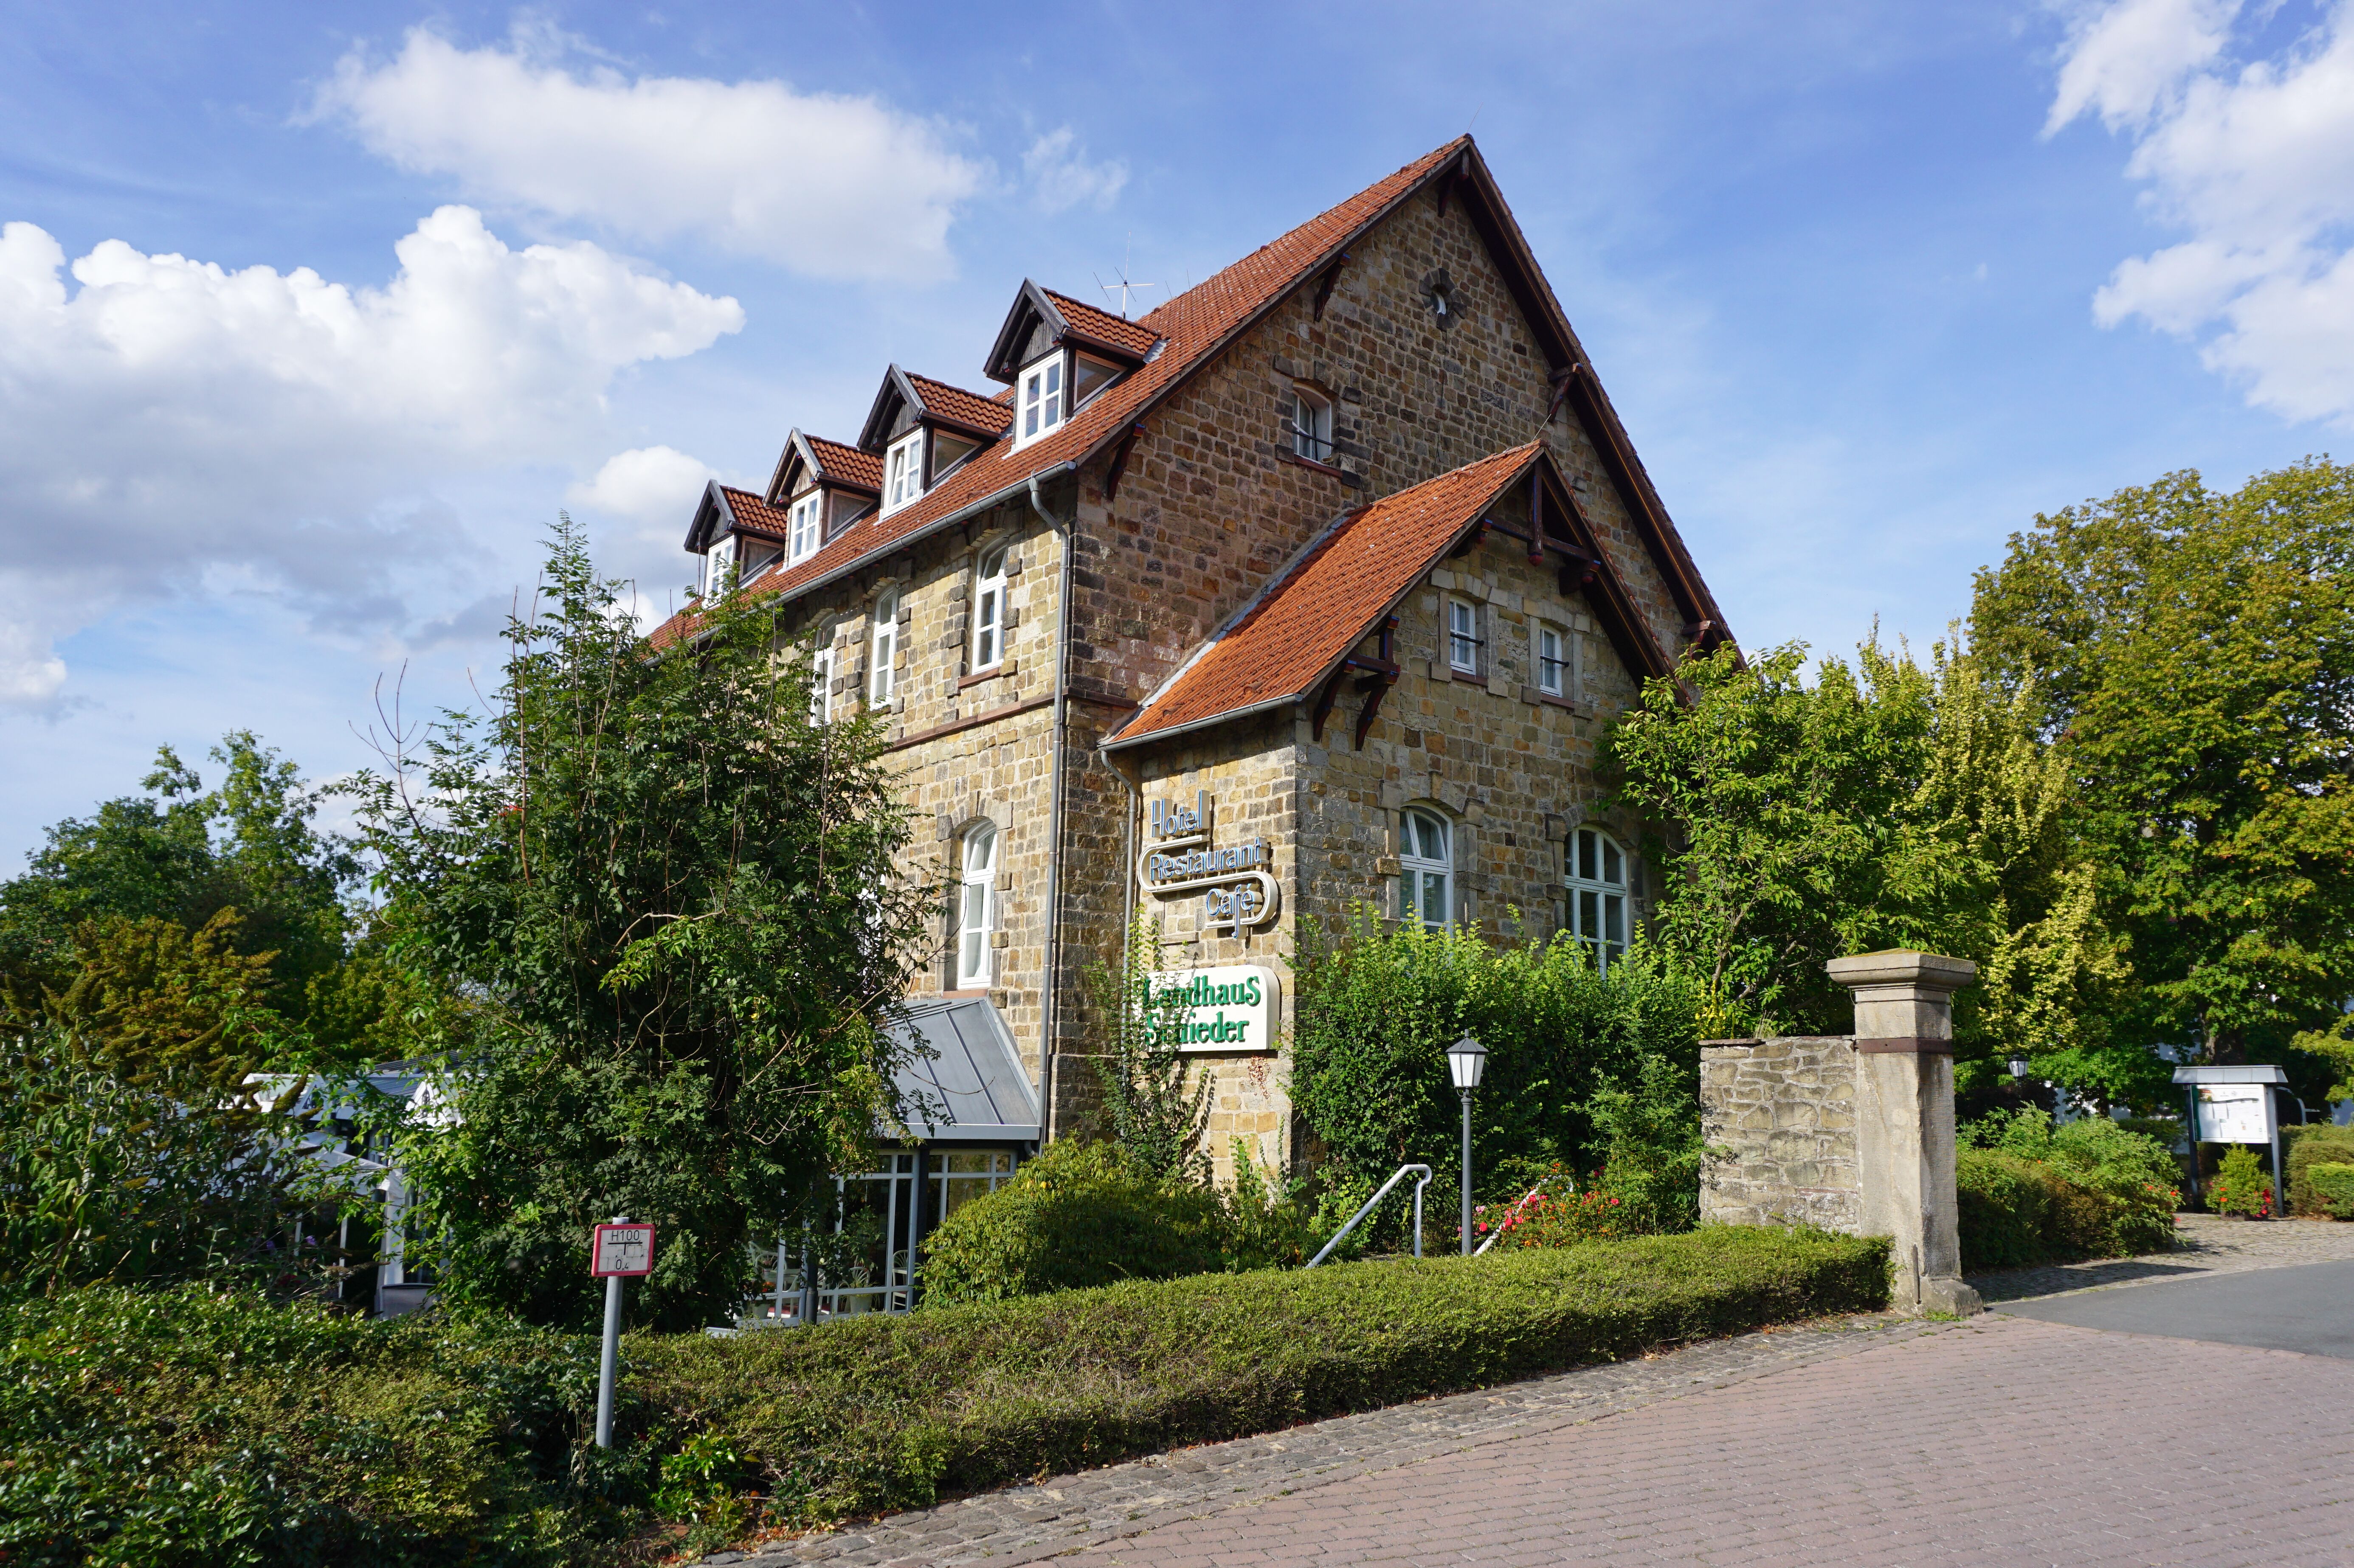 Hotel Landhaus Schieder, Schieder-Schwalenberg.
